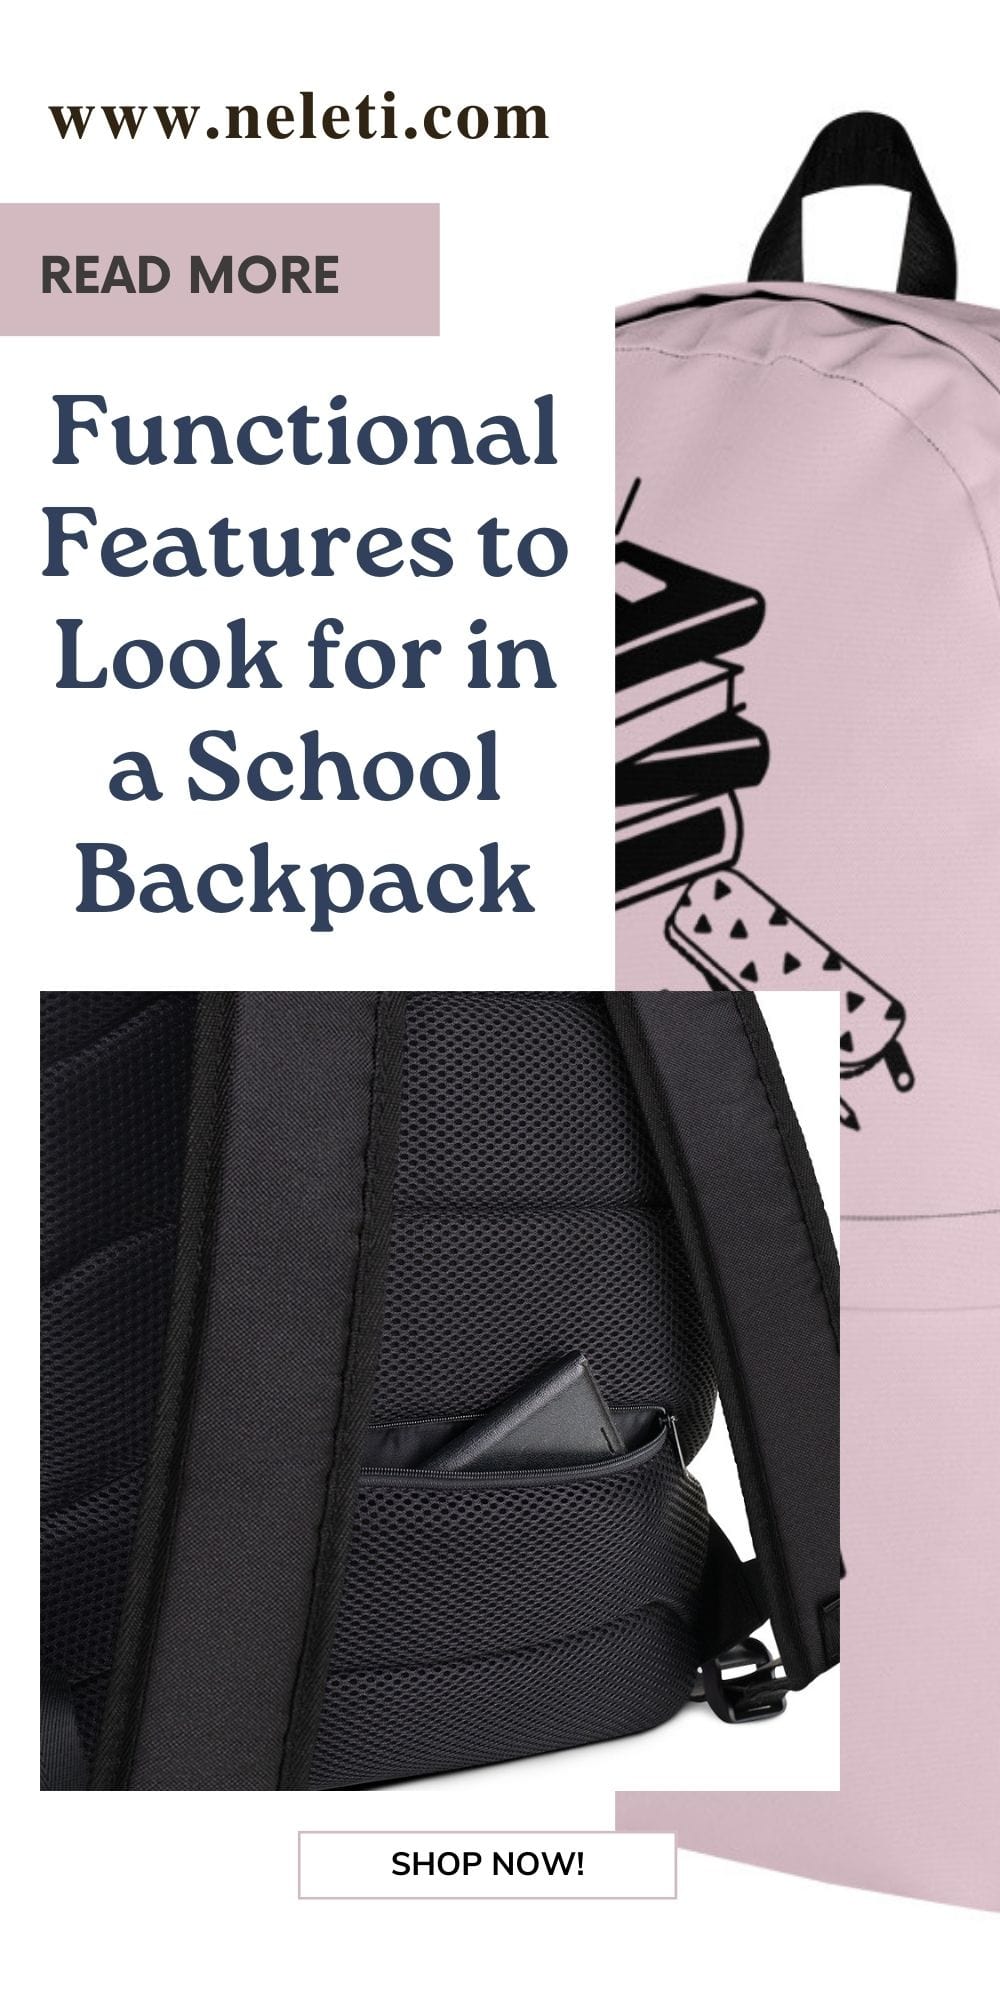 backpacks-for-school-neleti.com